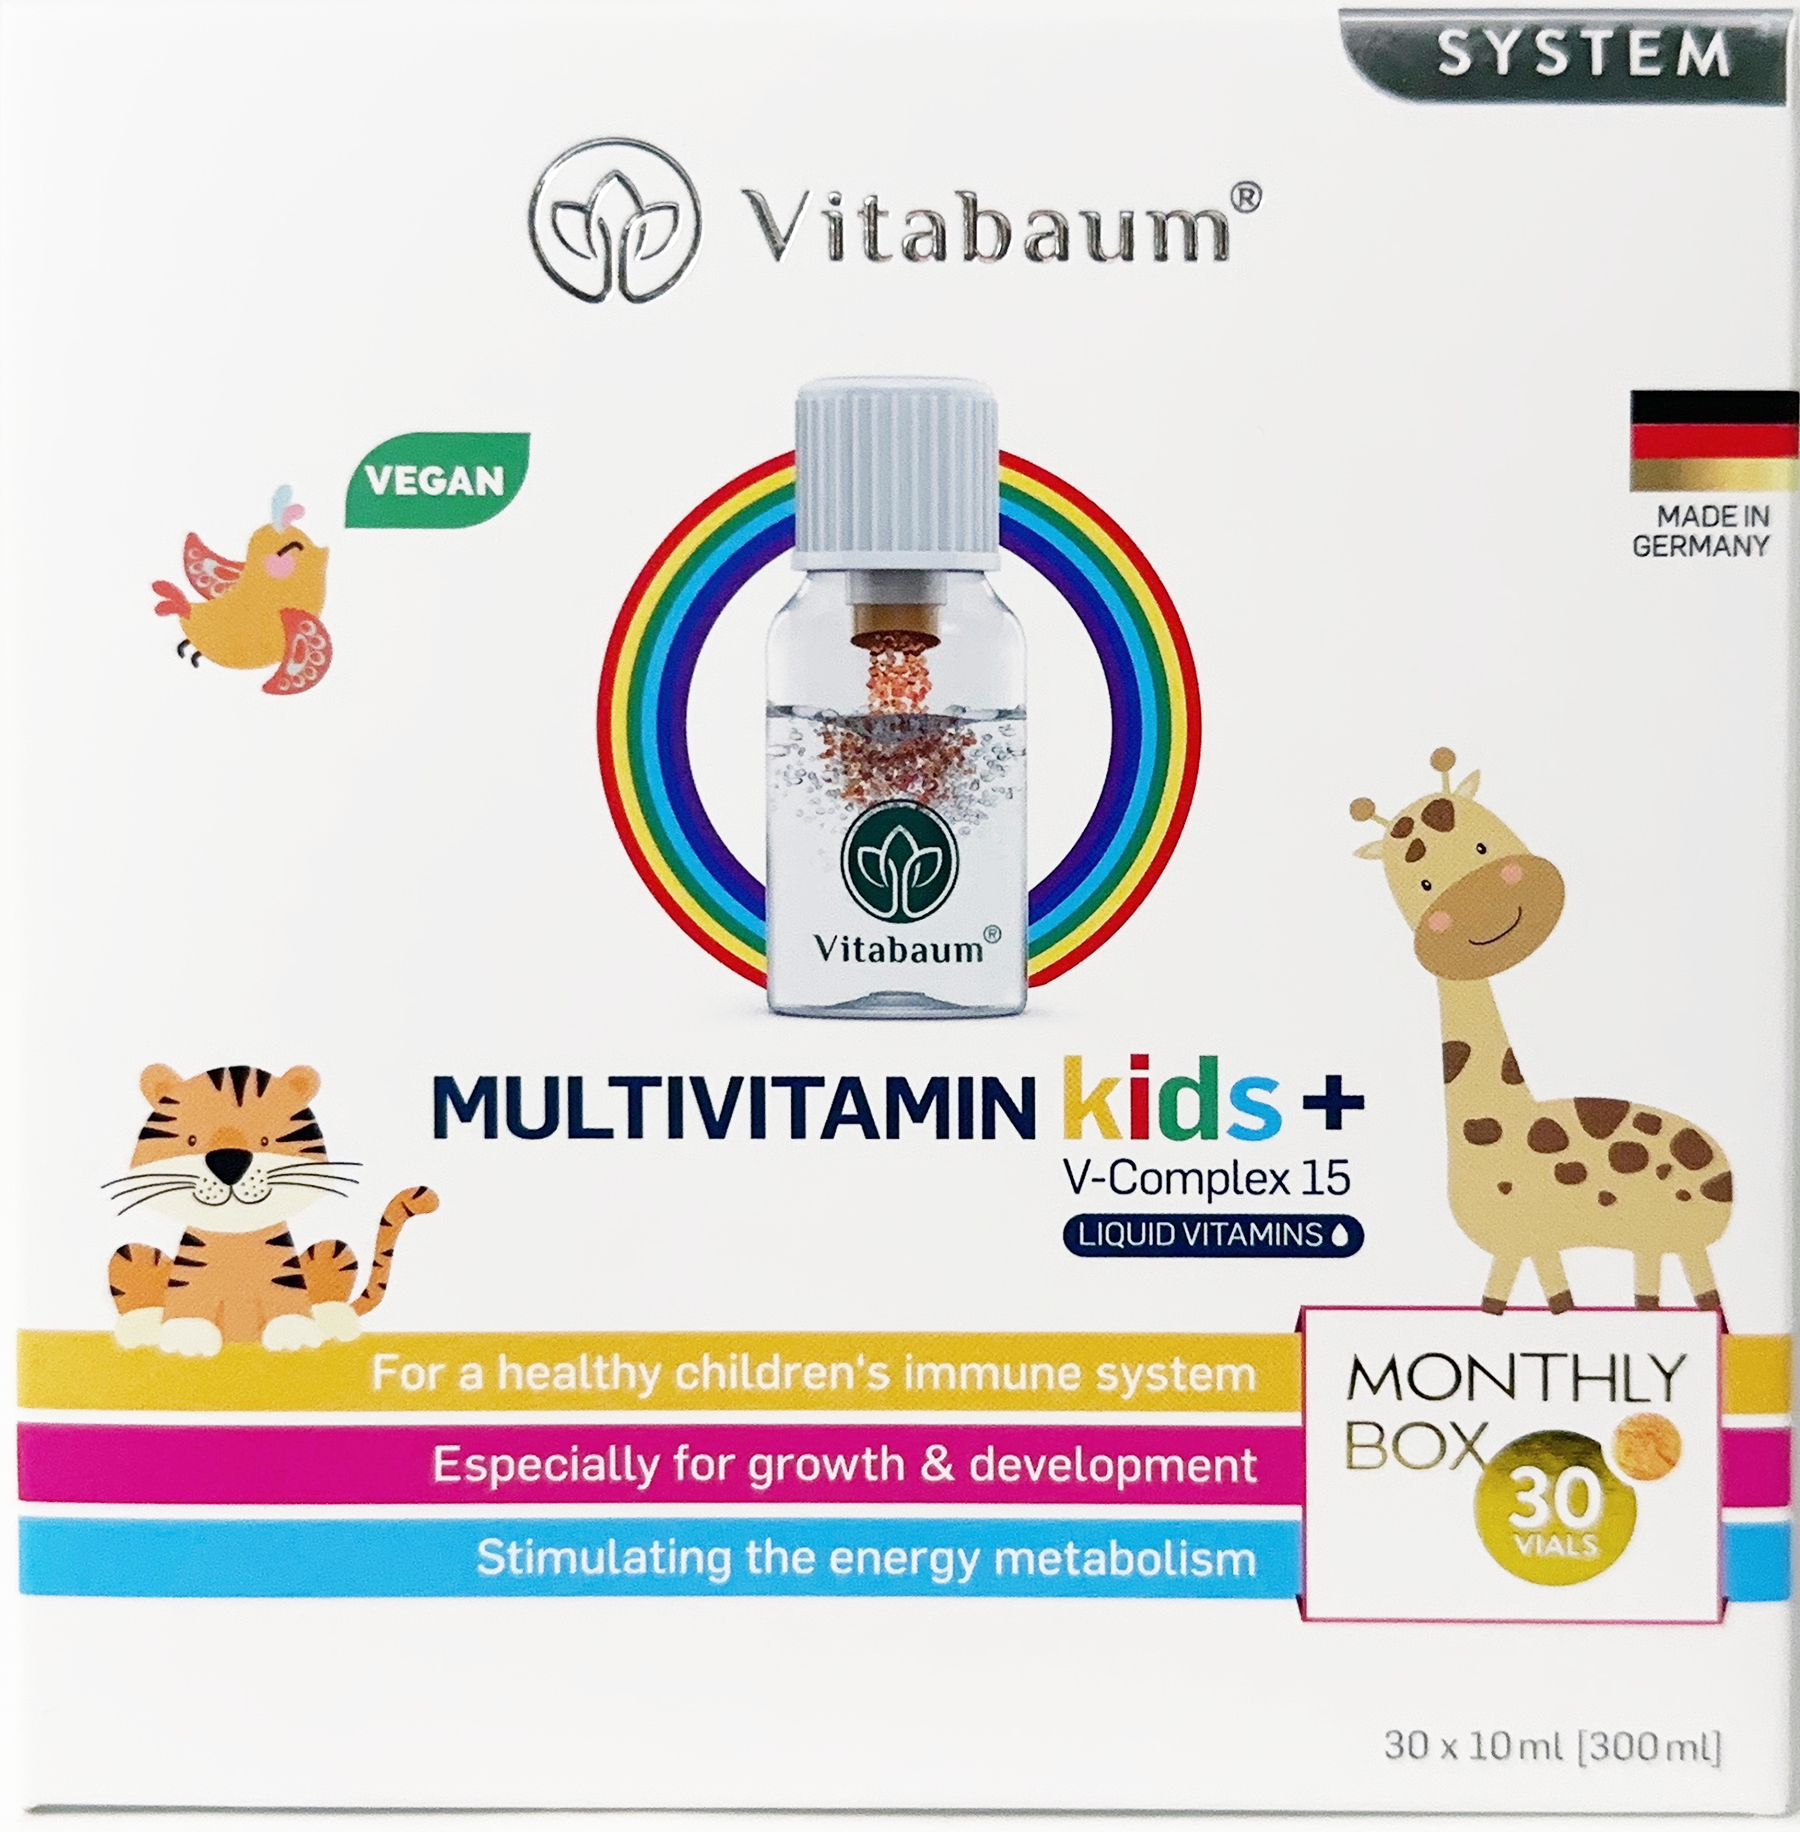 Vitabaum® Multivitamin Kids+ - Dietary supplement with 15 vitamins & minerals